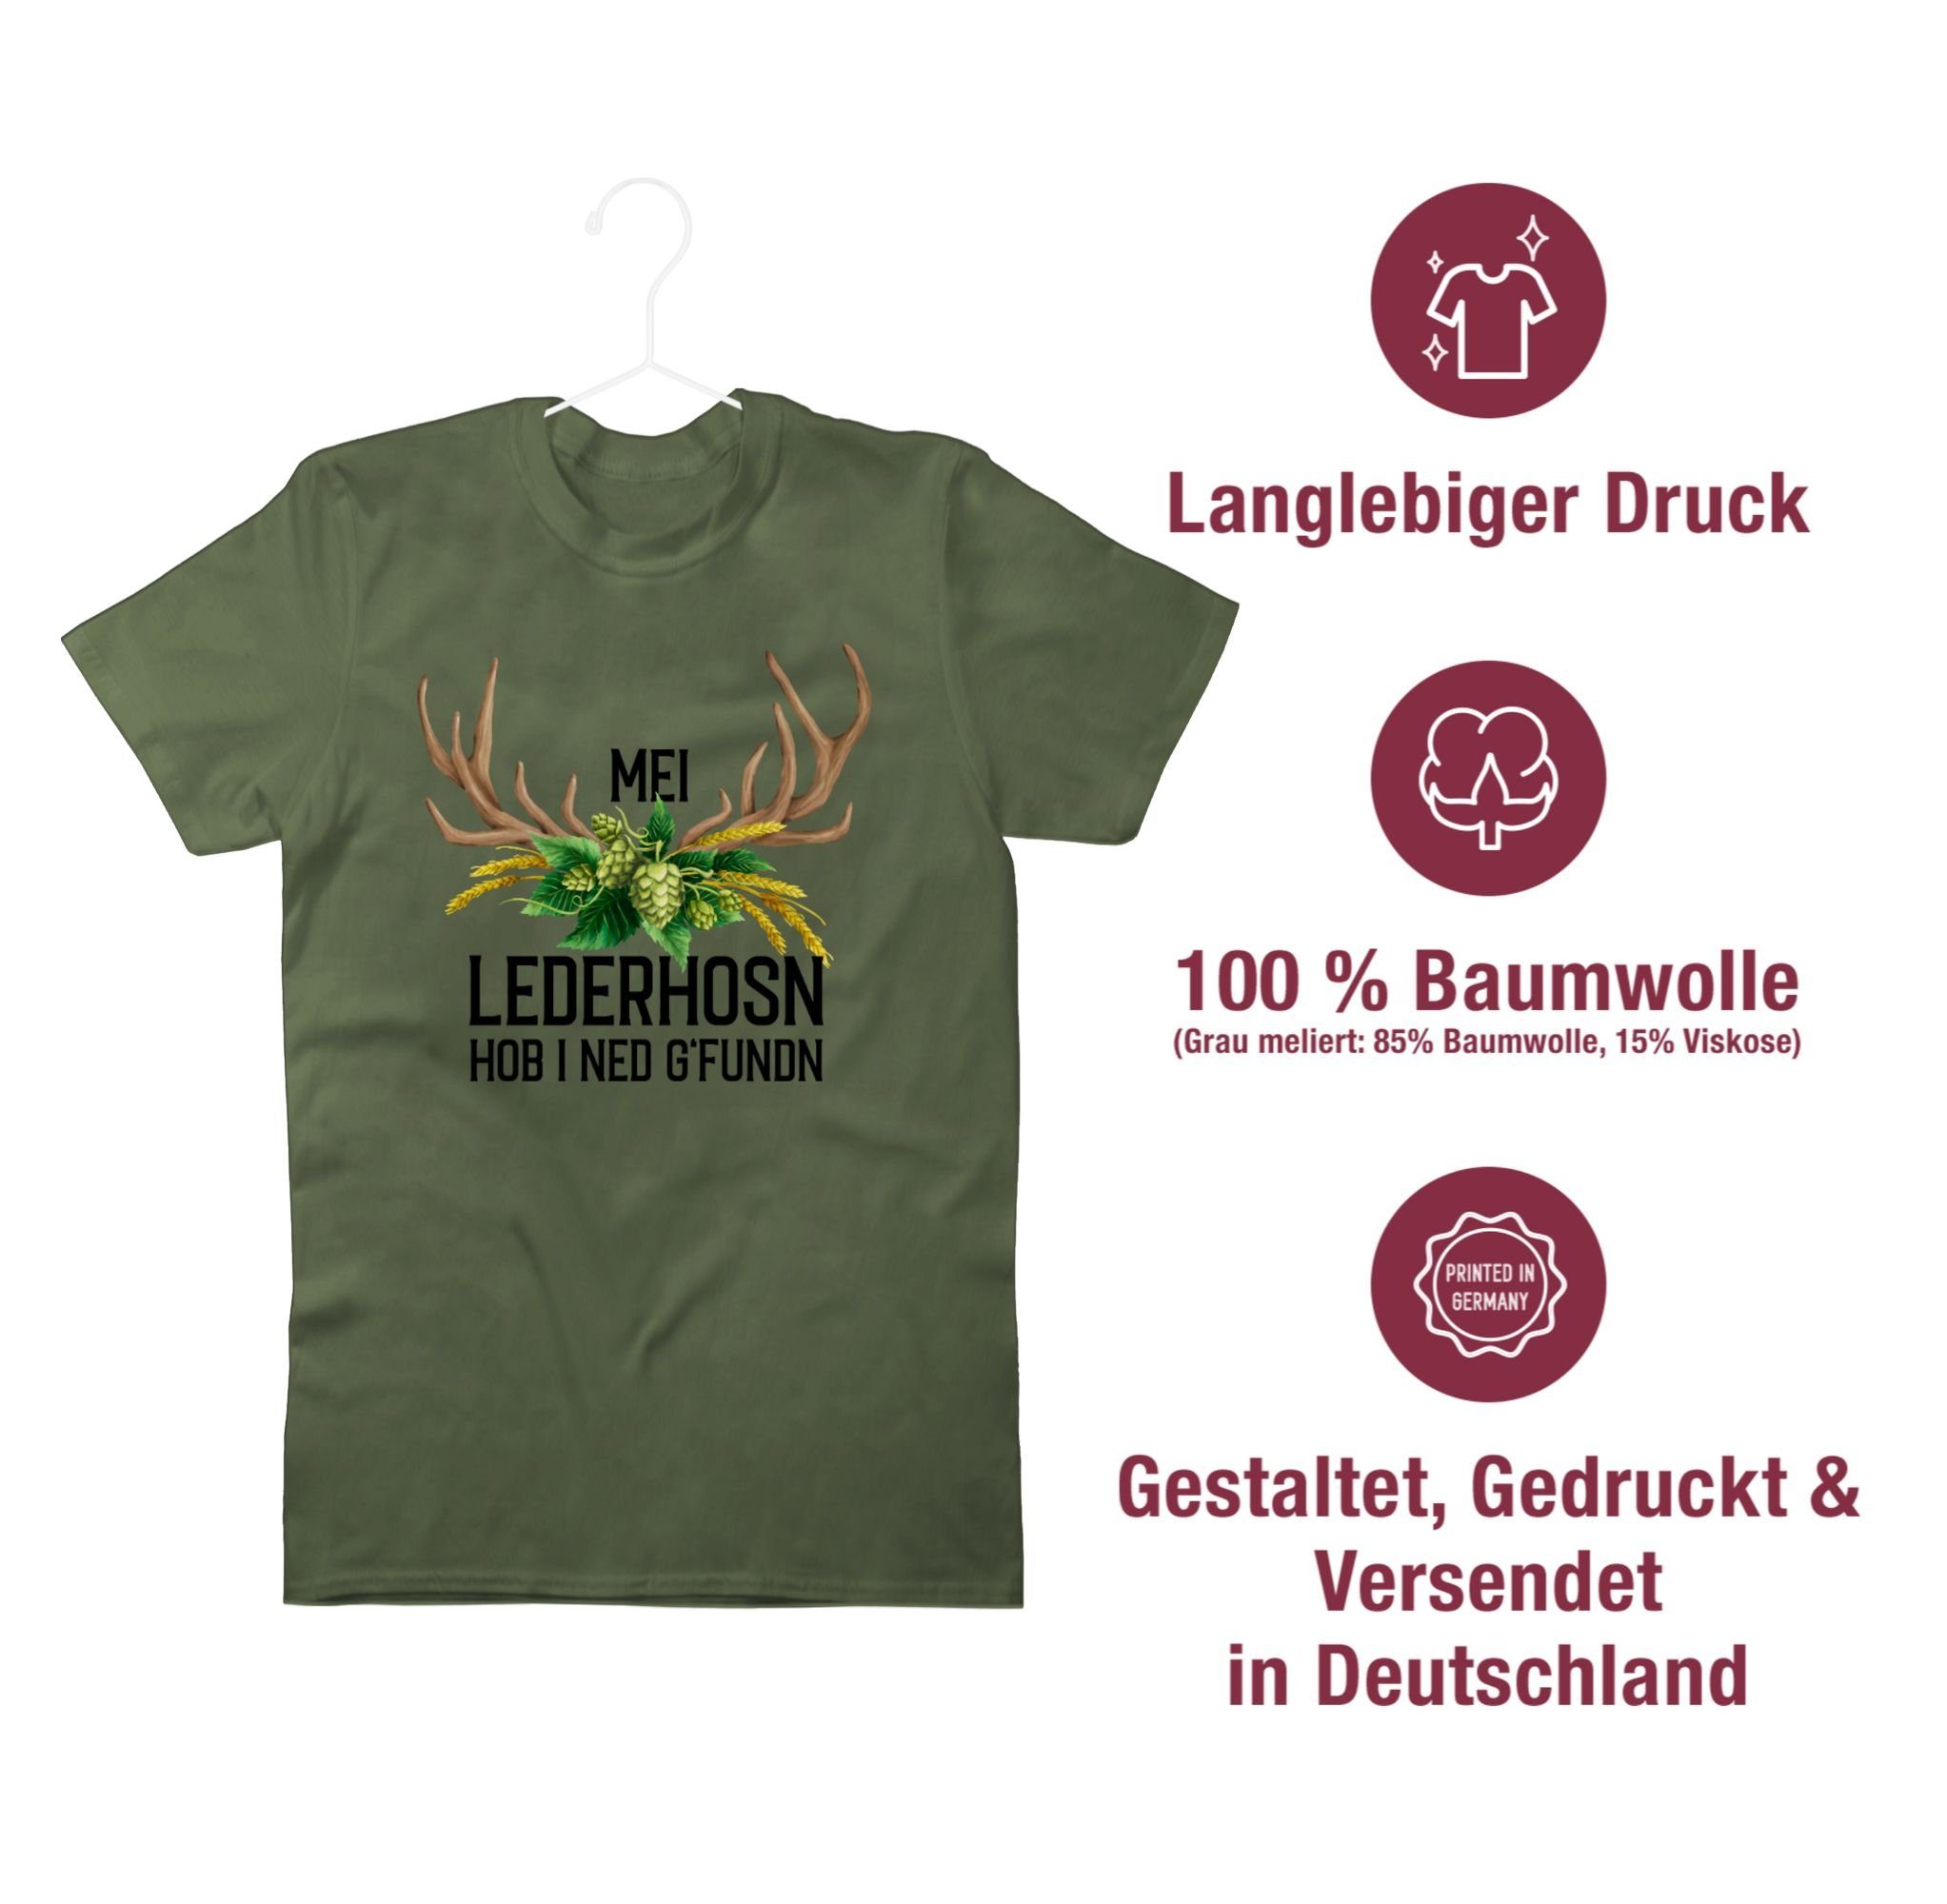 Oktoberfest Mode Mei i für hob T-Shirt 01 Hopfen Hirschgeweih g'fundn Lederhosn Army Herren Shirtracer ned und - Grün Weizen